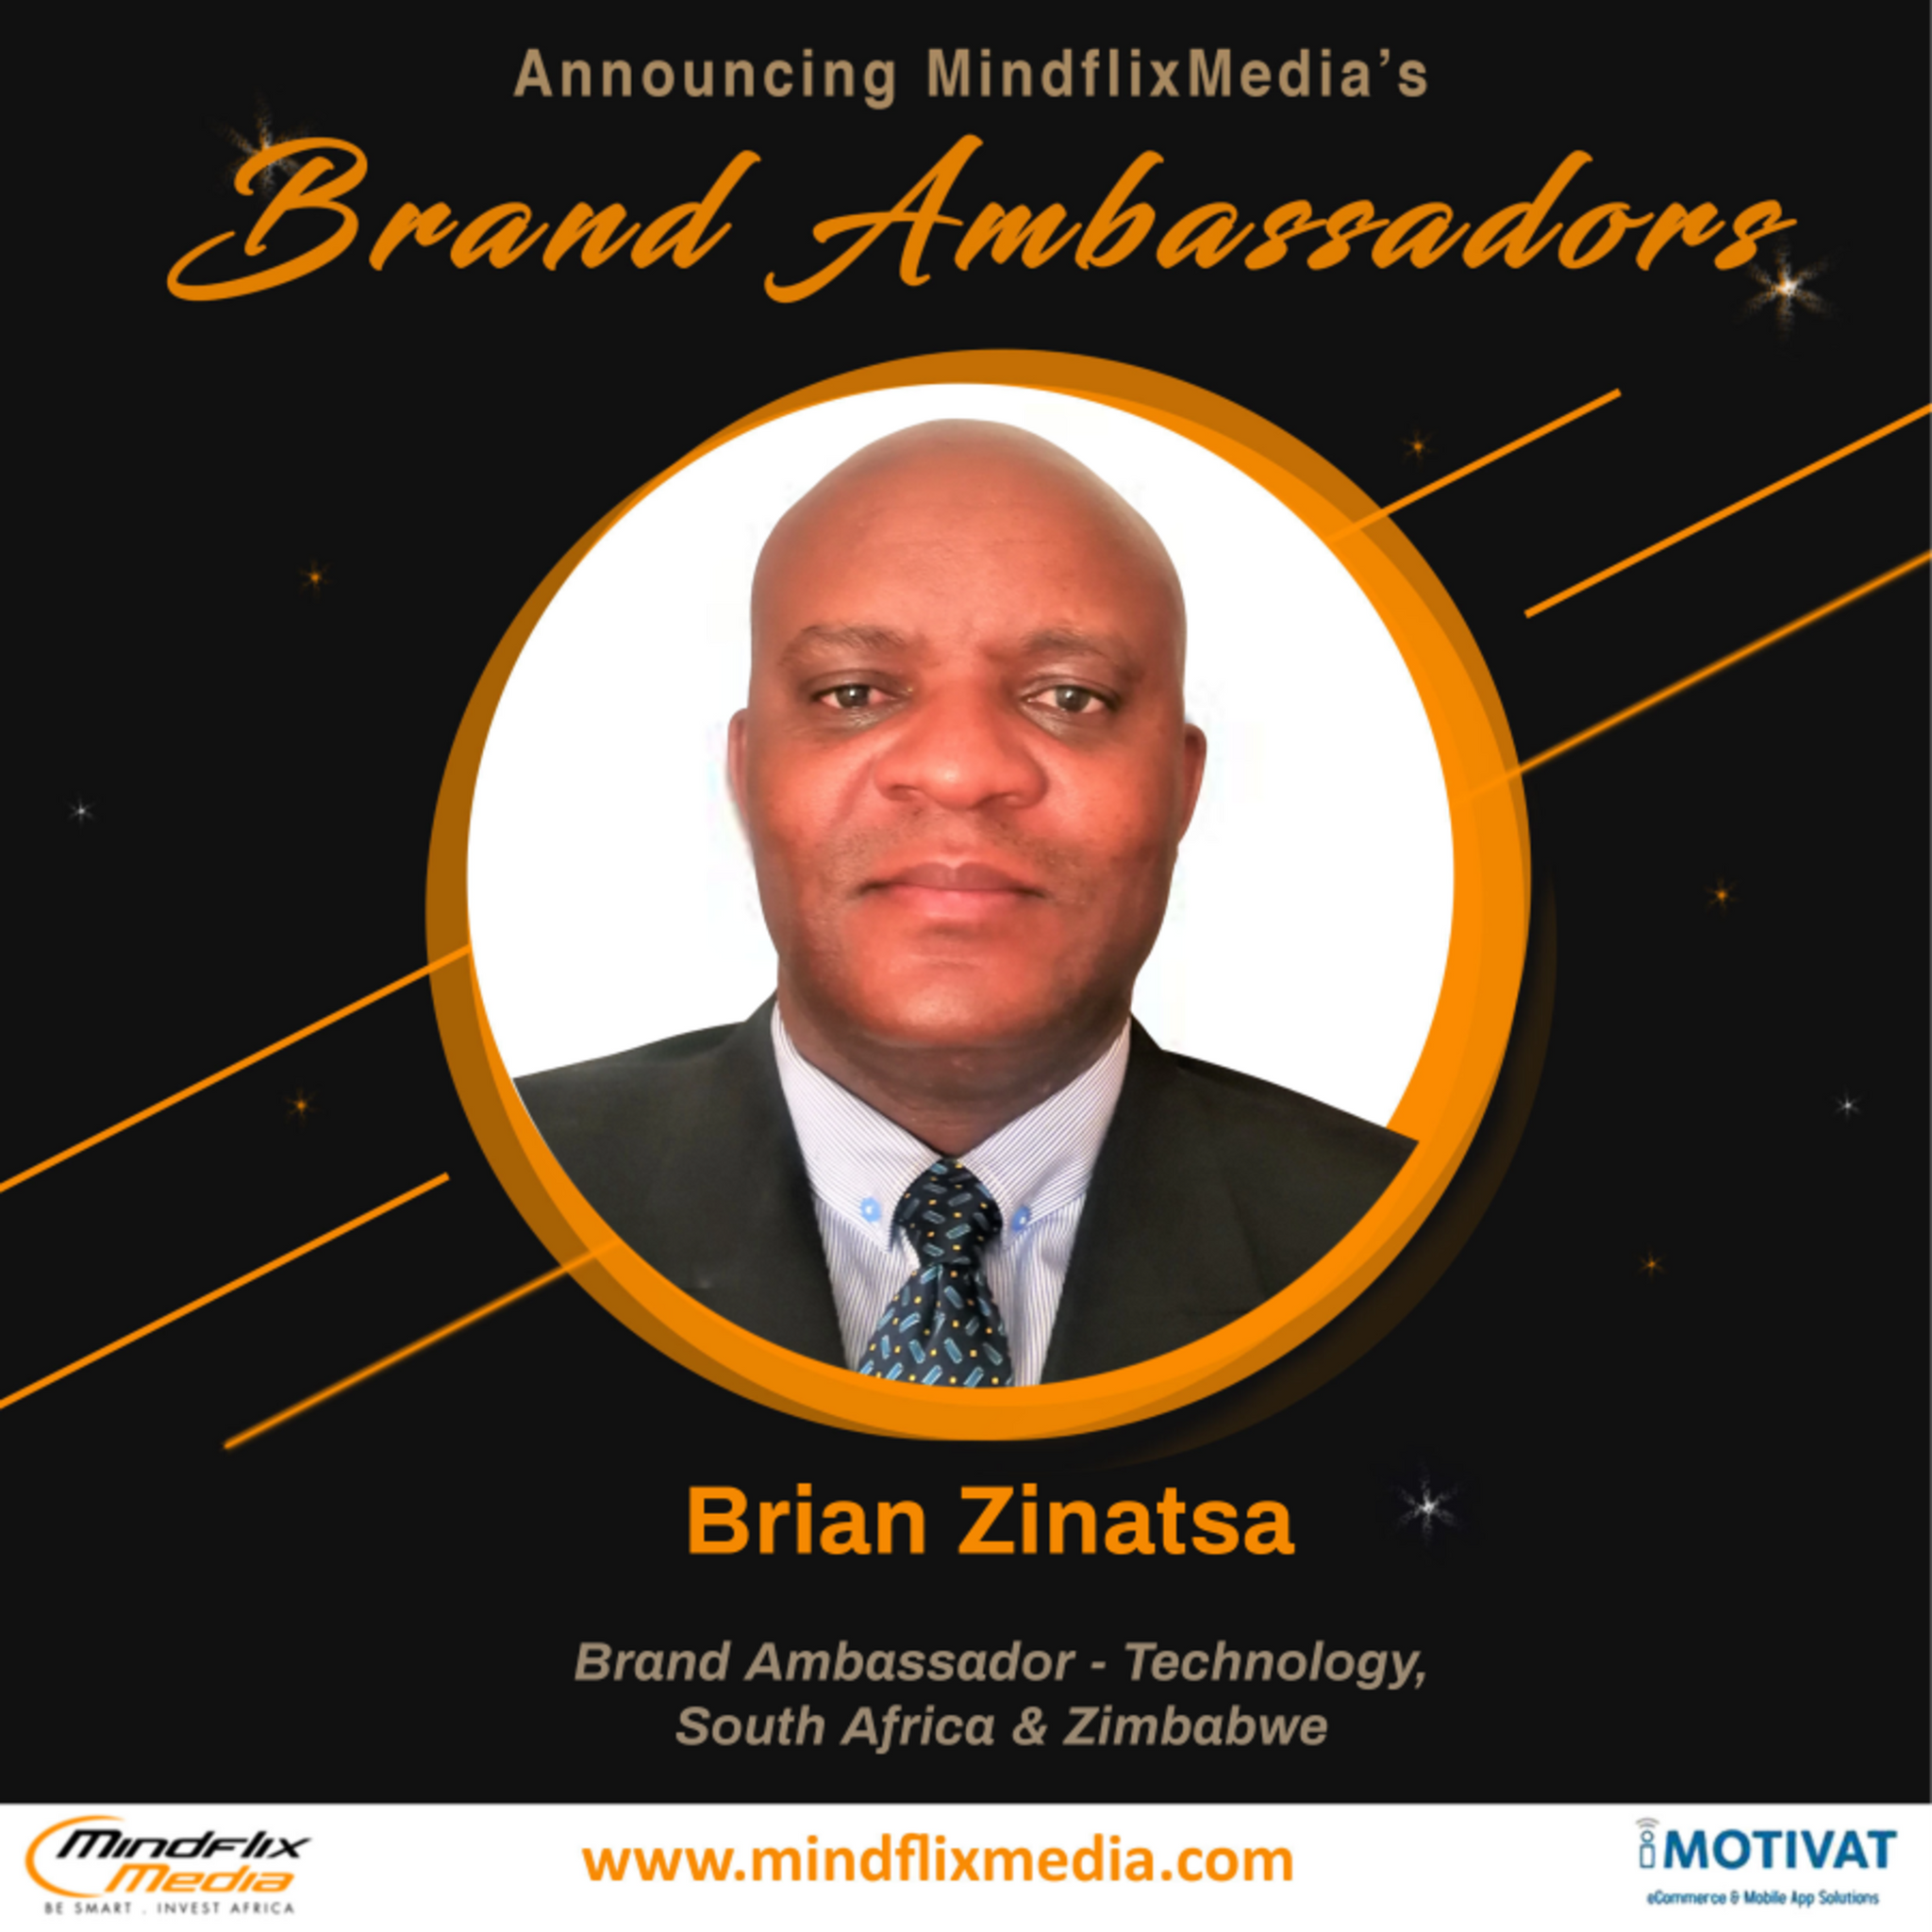 Brian Zinatsa - Brand Ambassador - Technology, South Africa and Zimbabwe